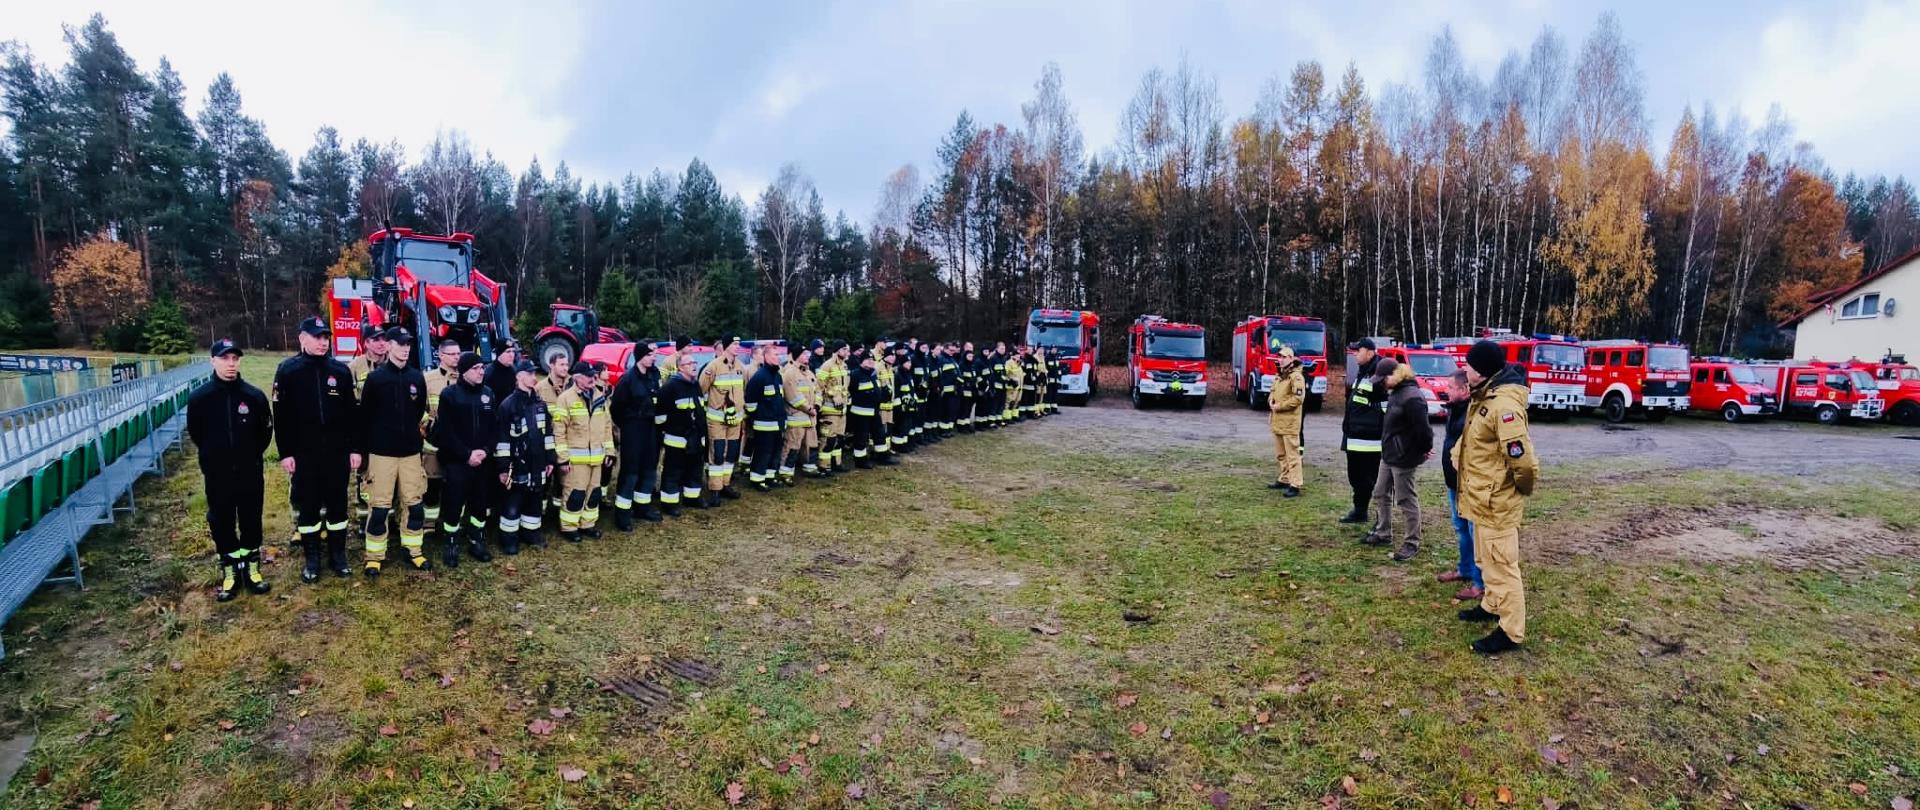 Zdjęcie pamiątkowe strażaków uczestniczących w ćwiczeniach, w tle las i ustawione w szeregu samochody pożarnicze.